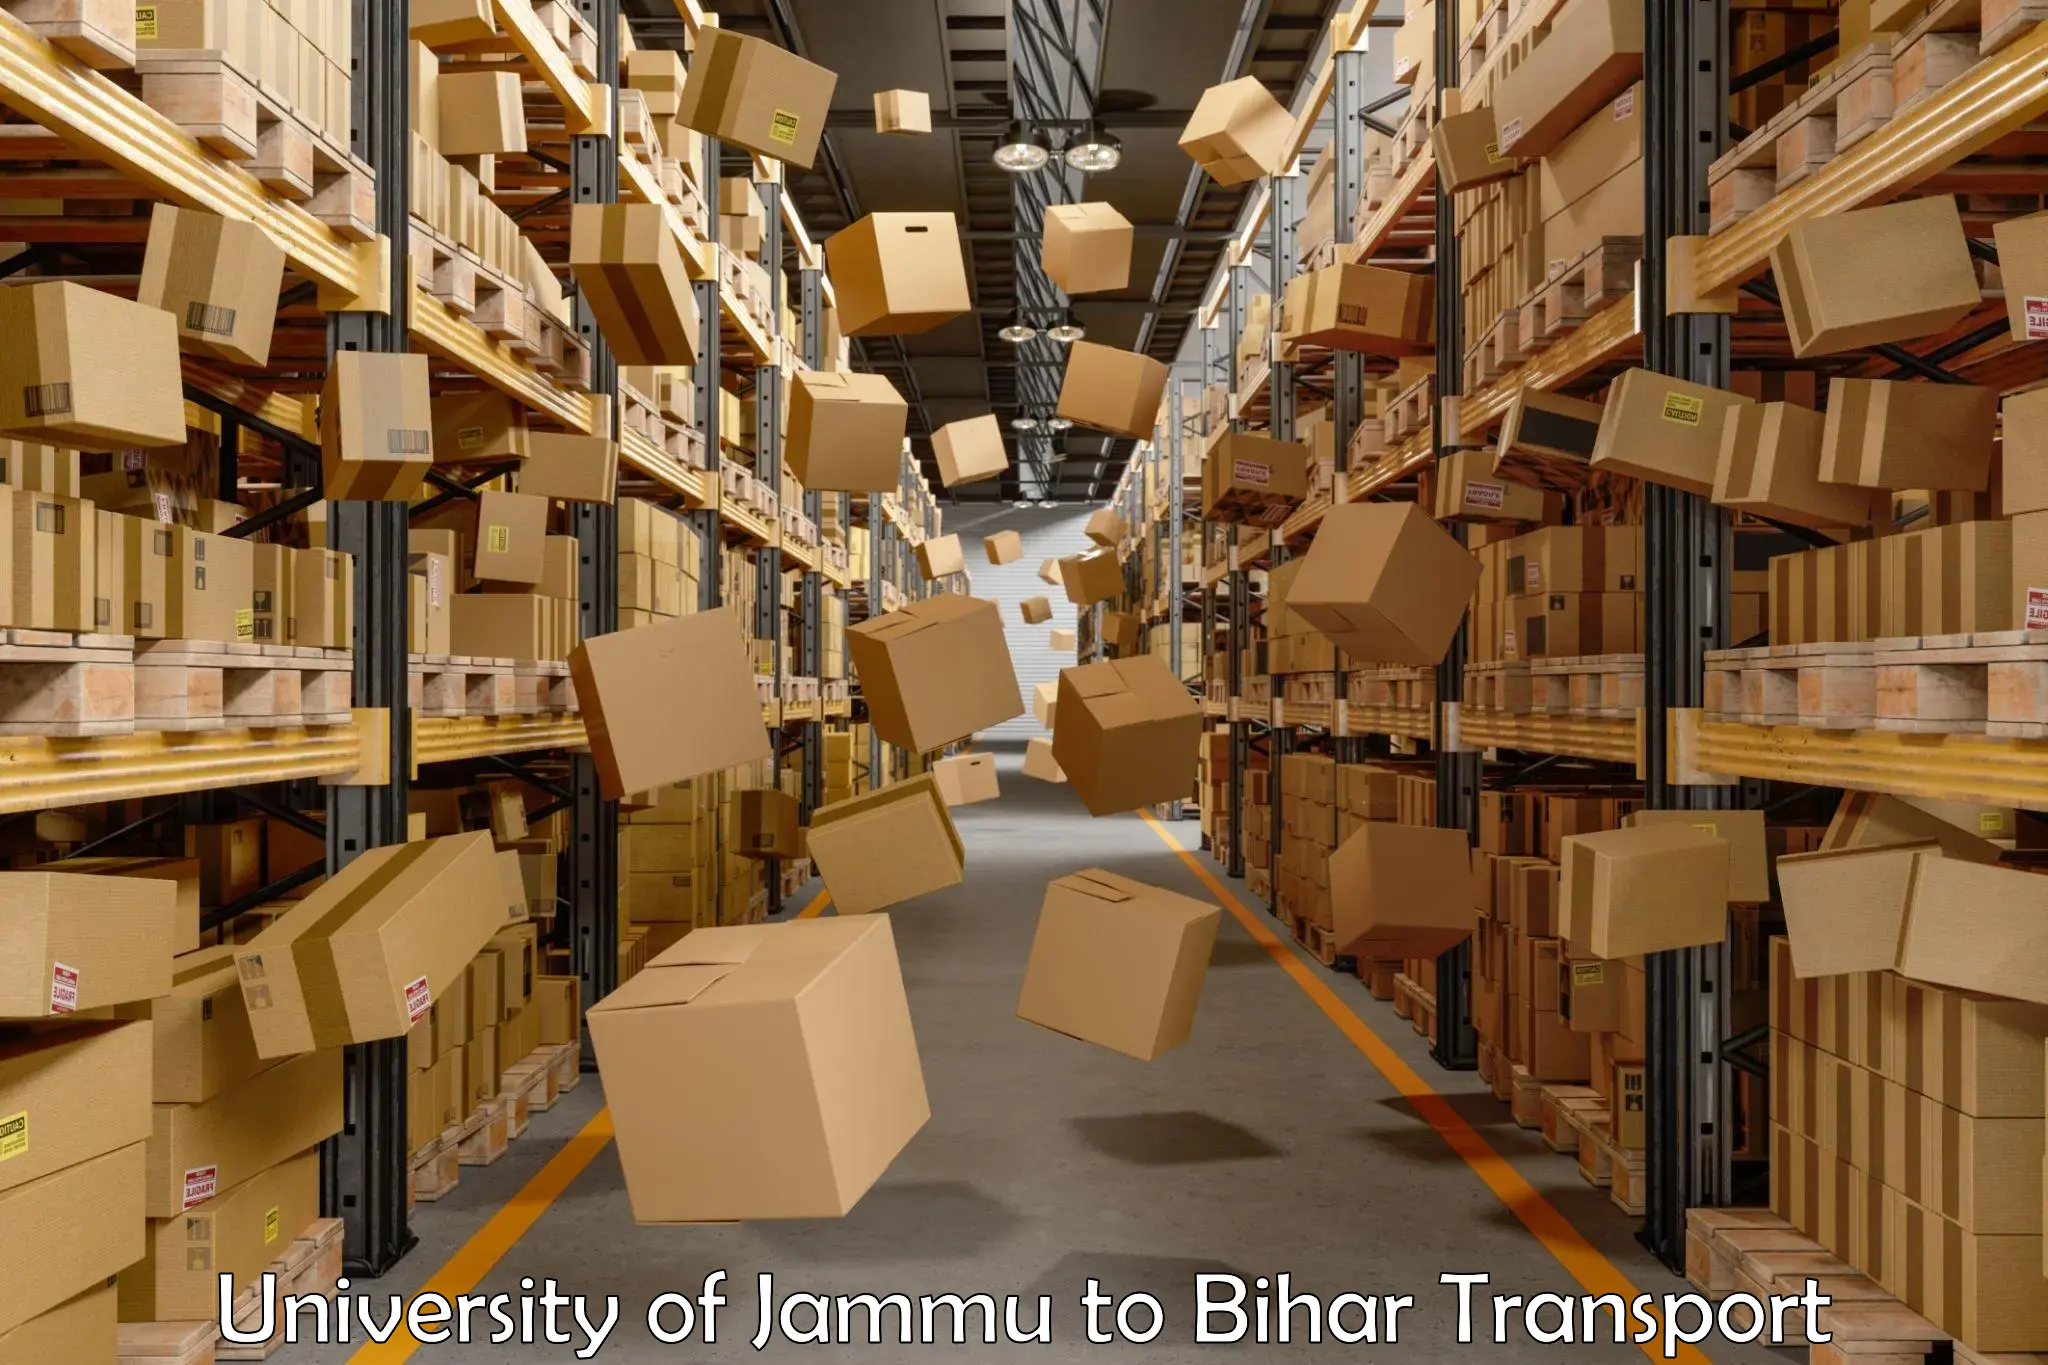 Goods delivery service University of Jammu to Bikramganj